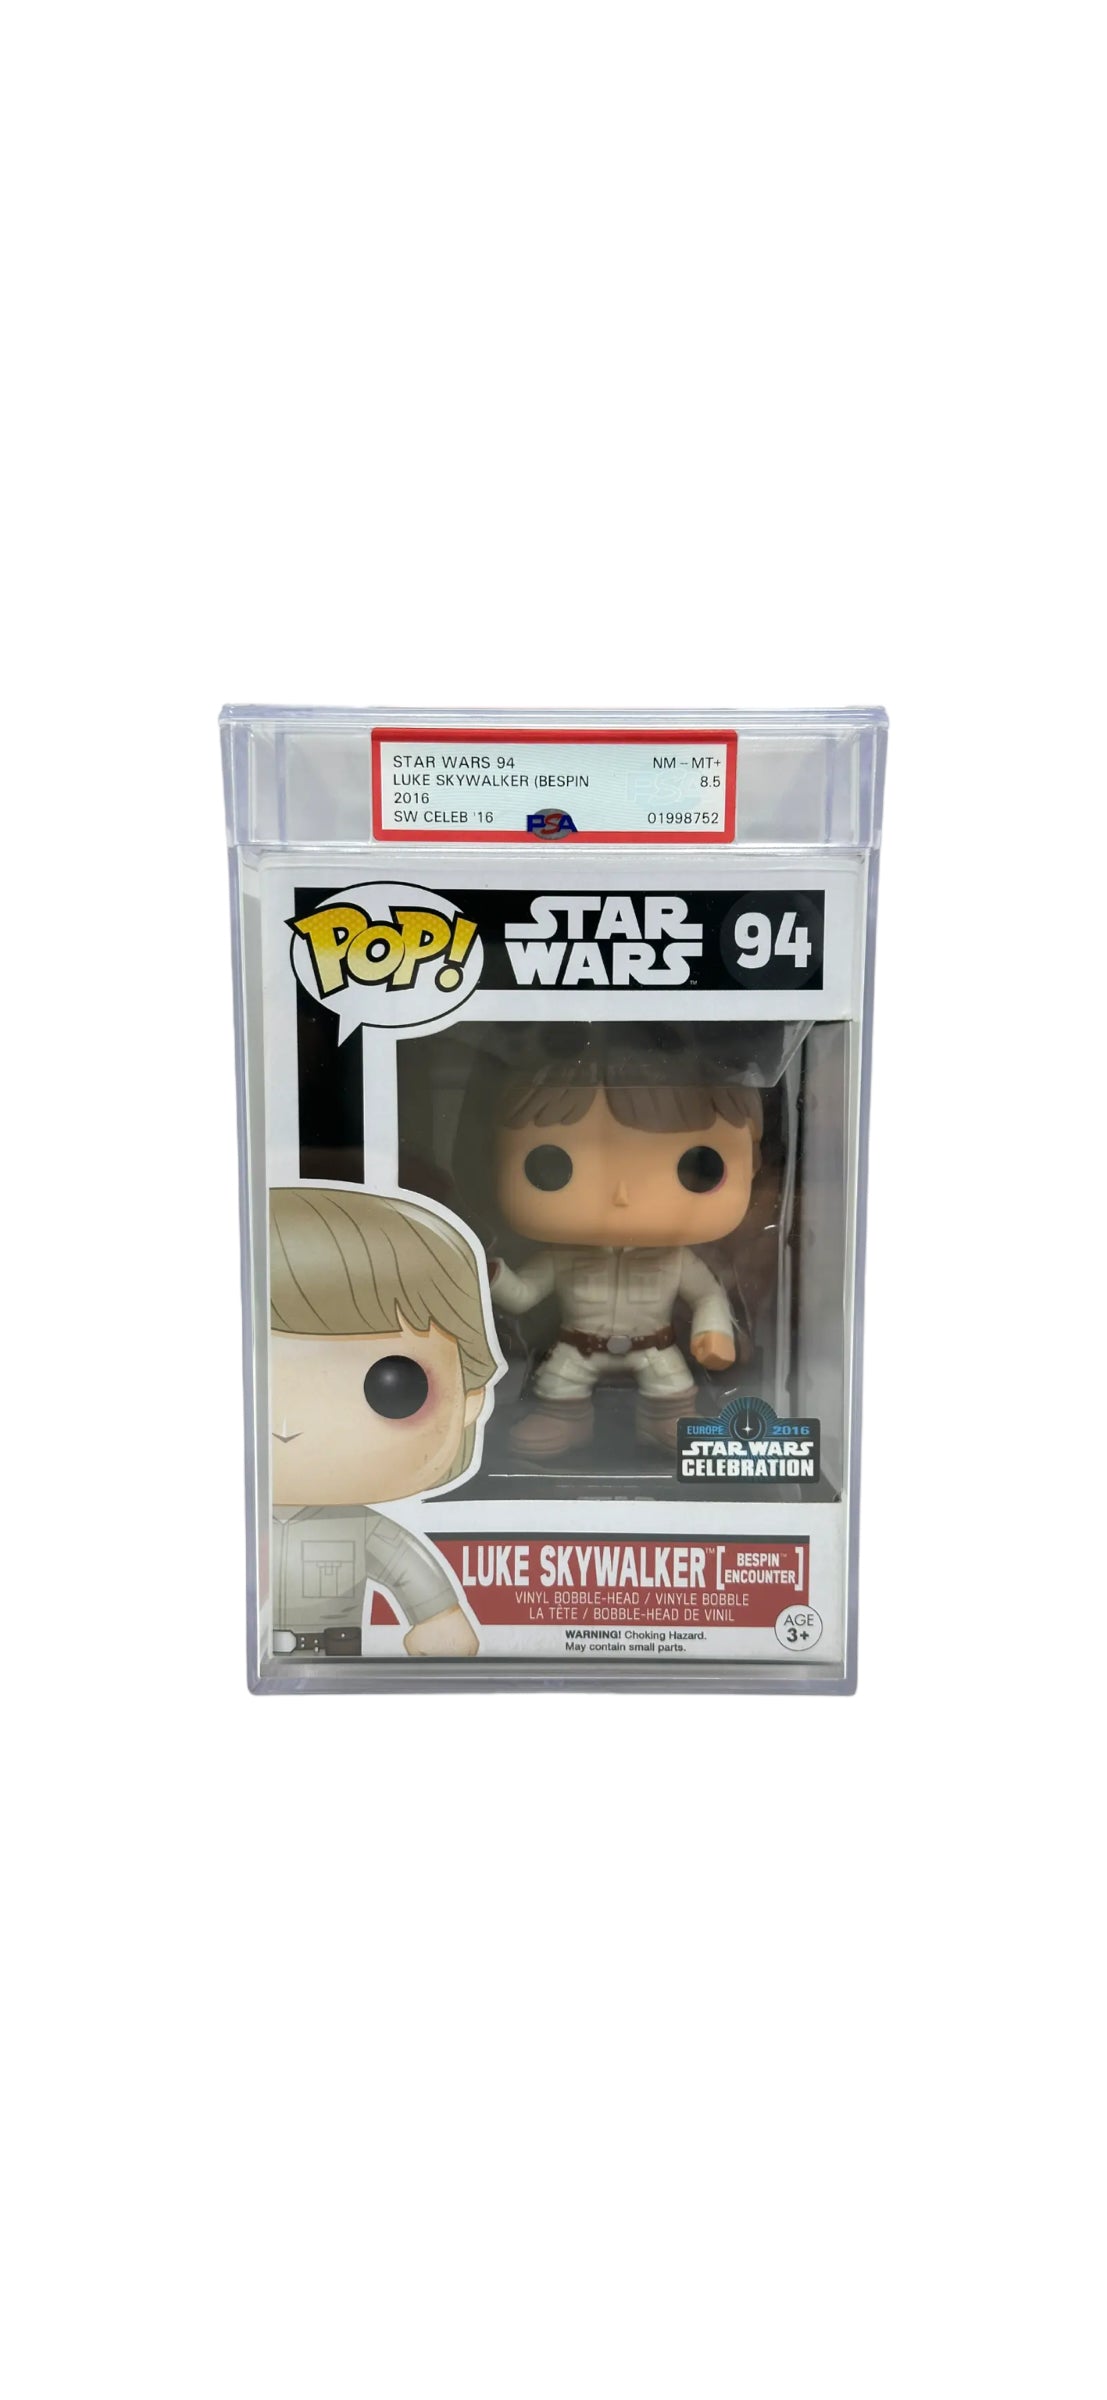 Sold 10/26 2016 Luke Skywalker (Bespin Encounter) Star Wars Celebrations EU